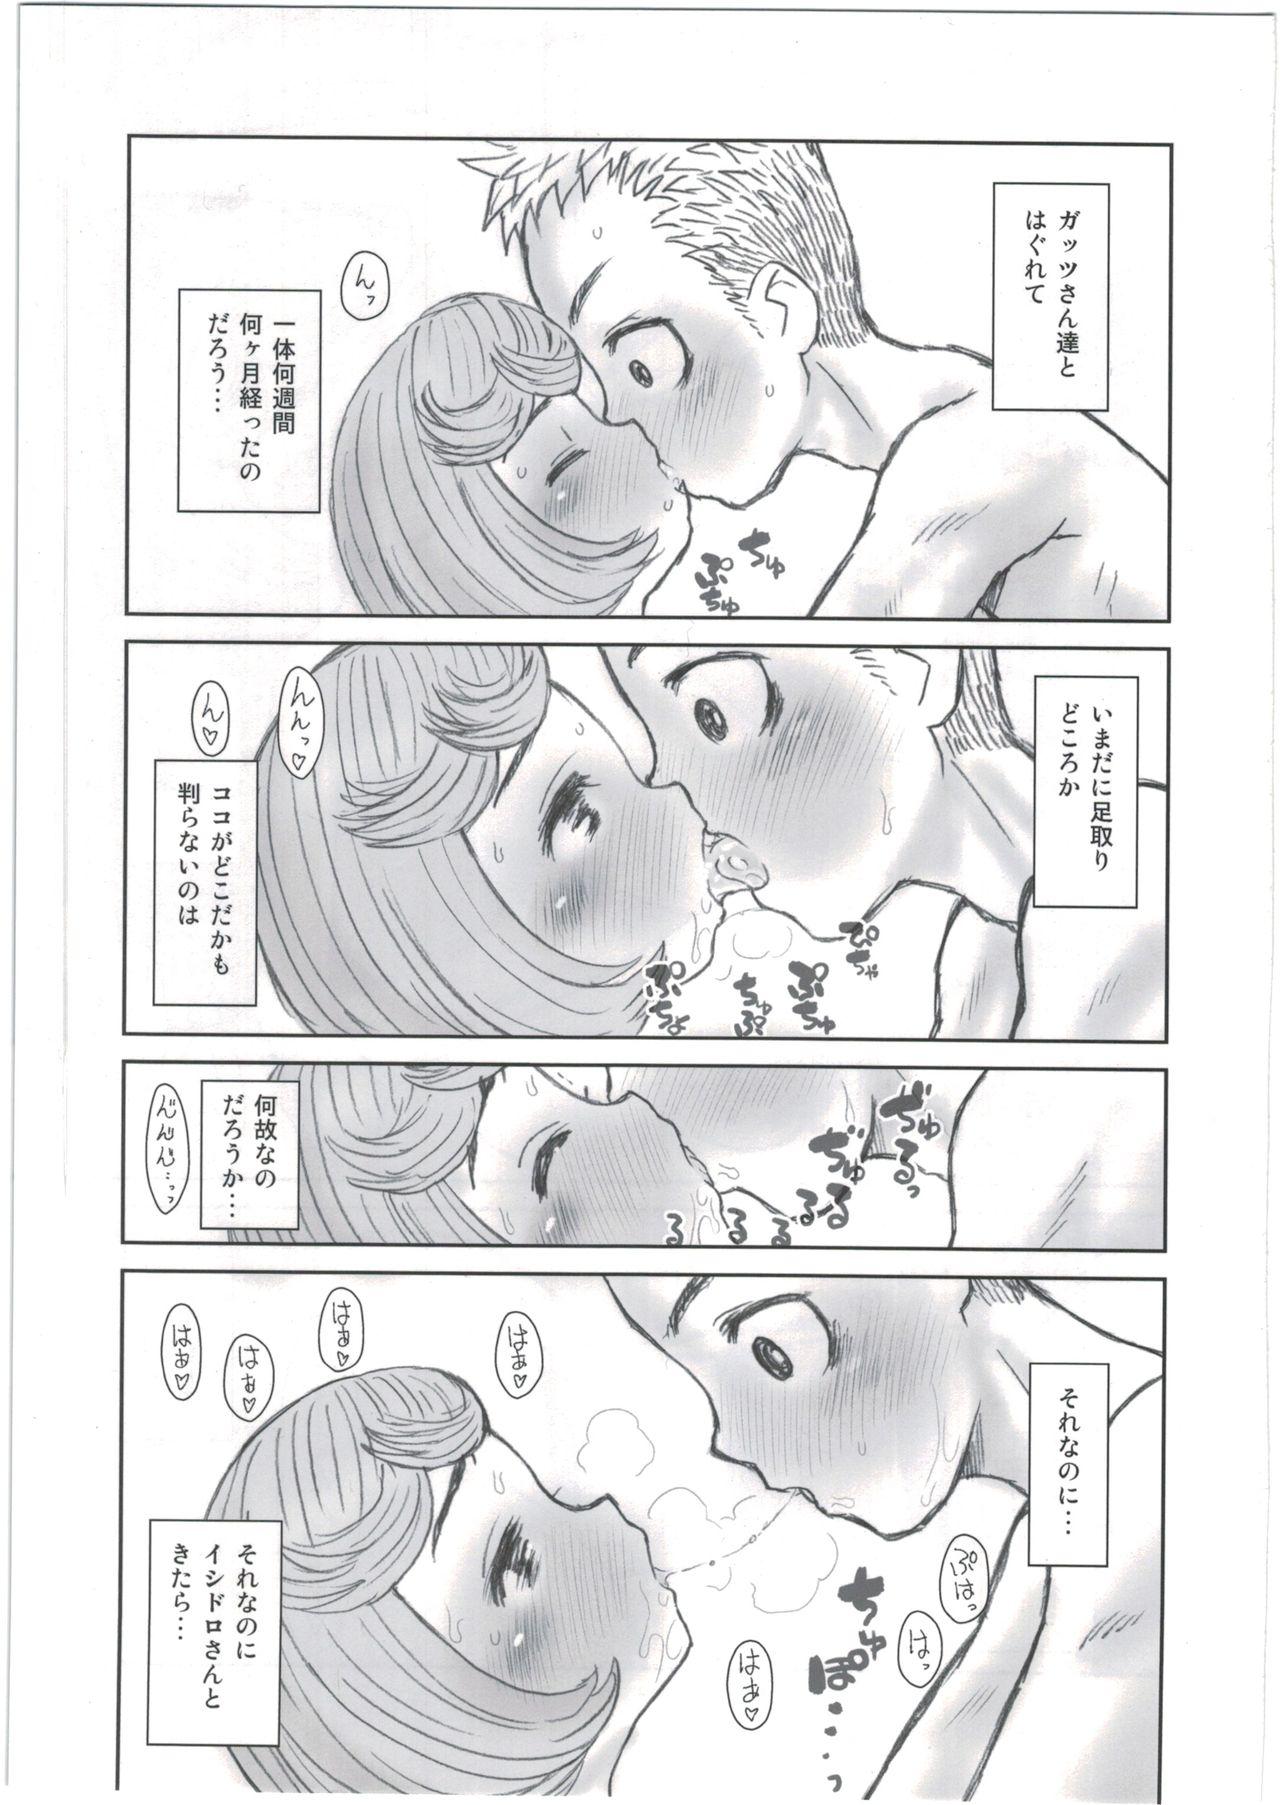 Uncensored Hinnyuu Musume 35 - Berserk Tetona - Page 5